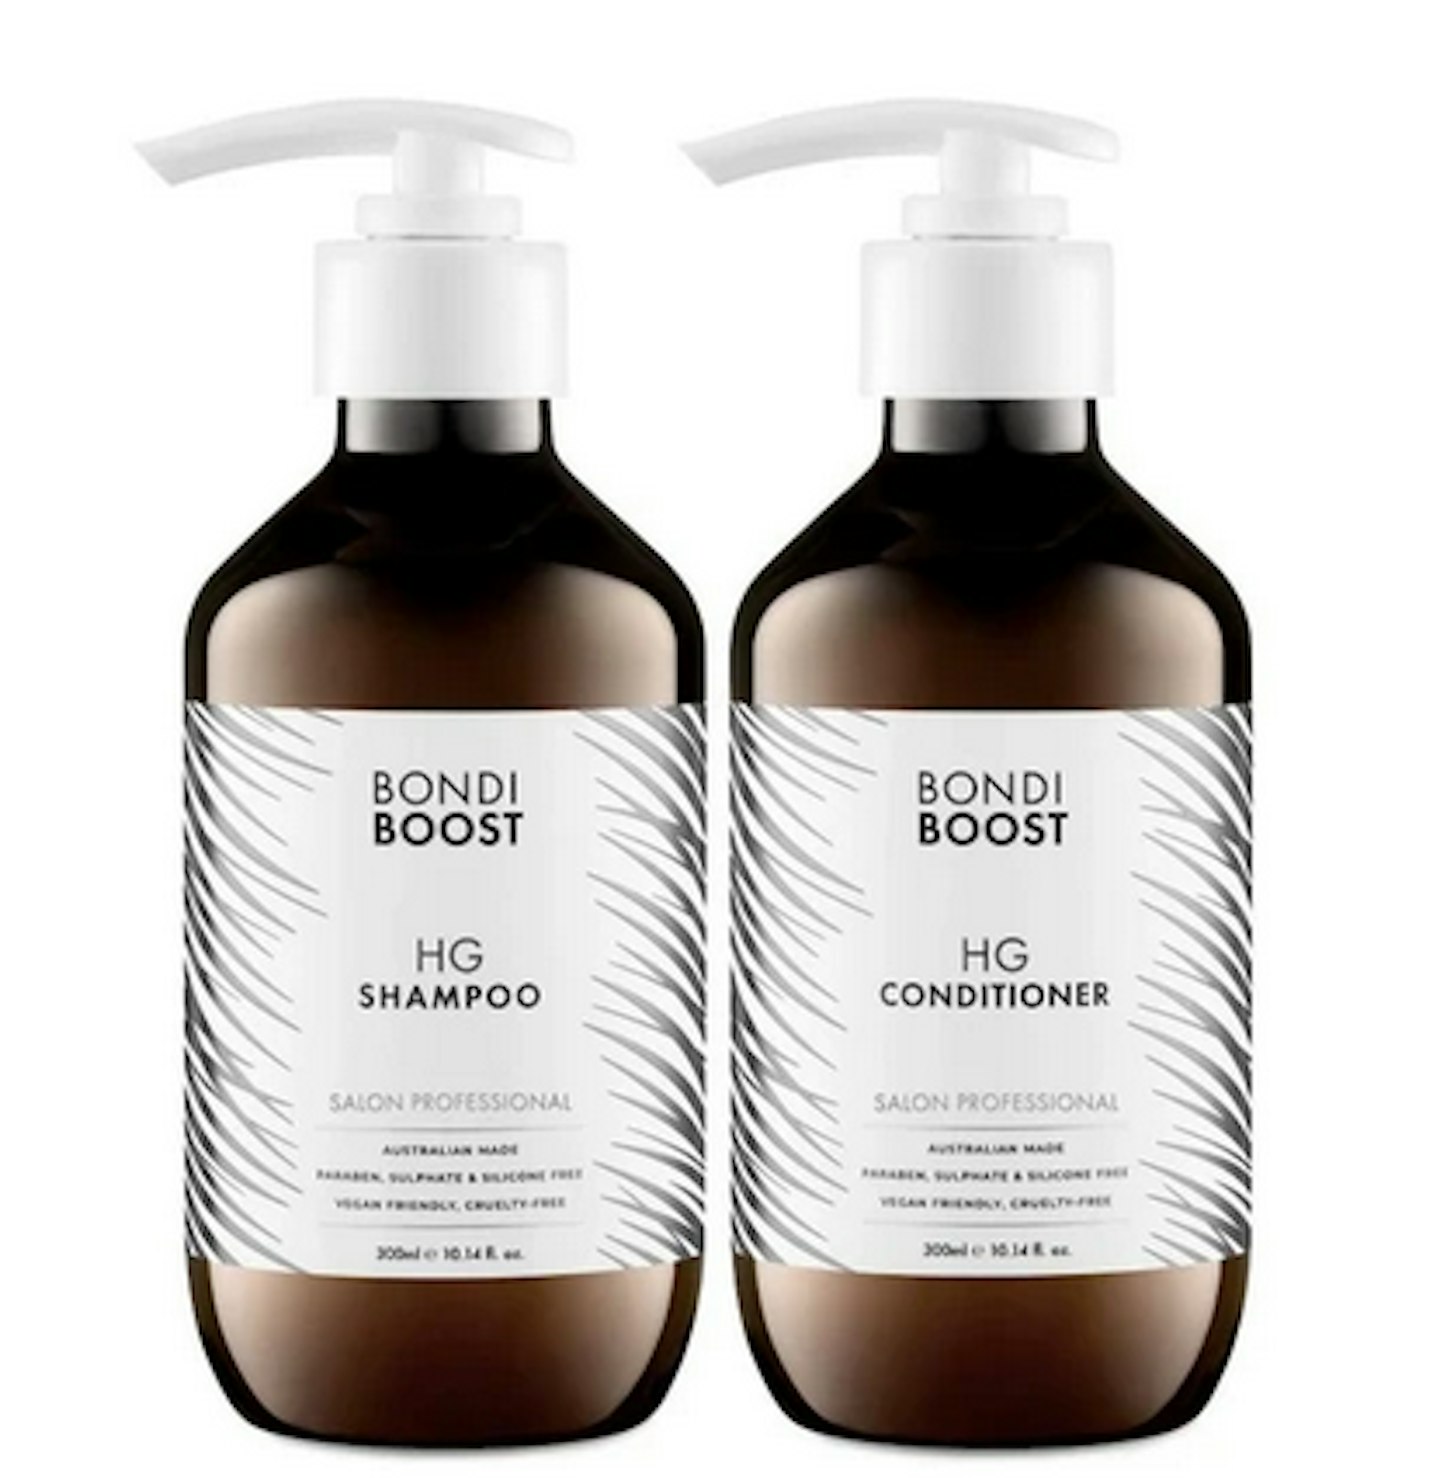 Bondi Boost Shampoo and Conditioner, £22.50 each